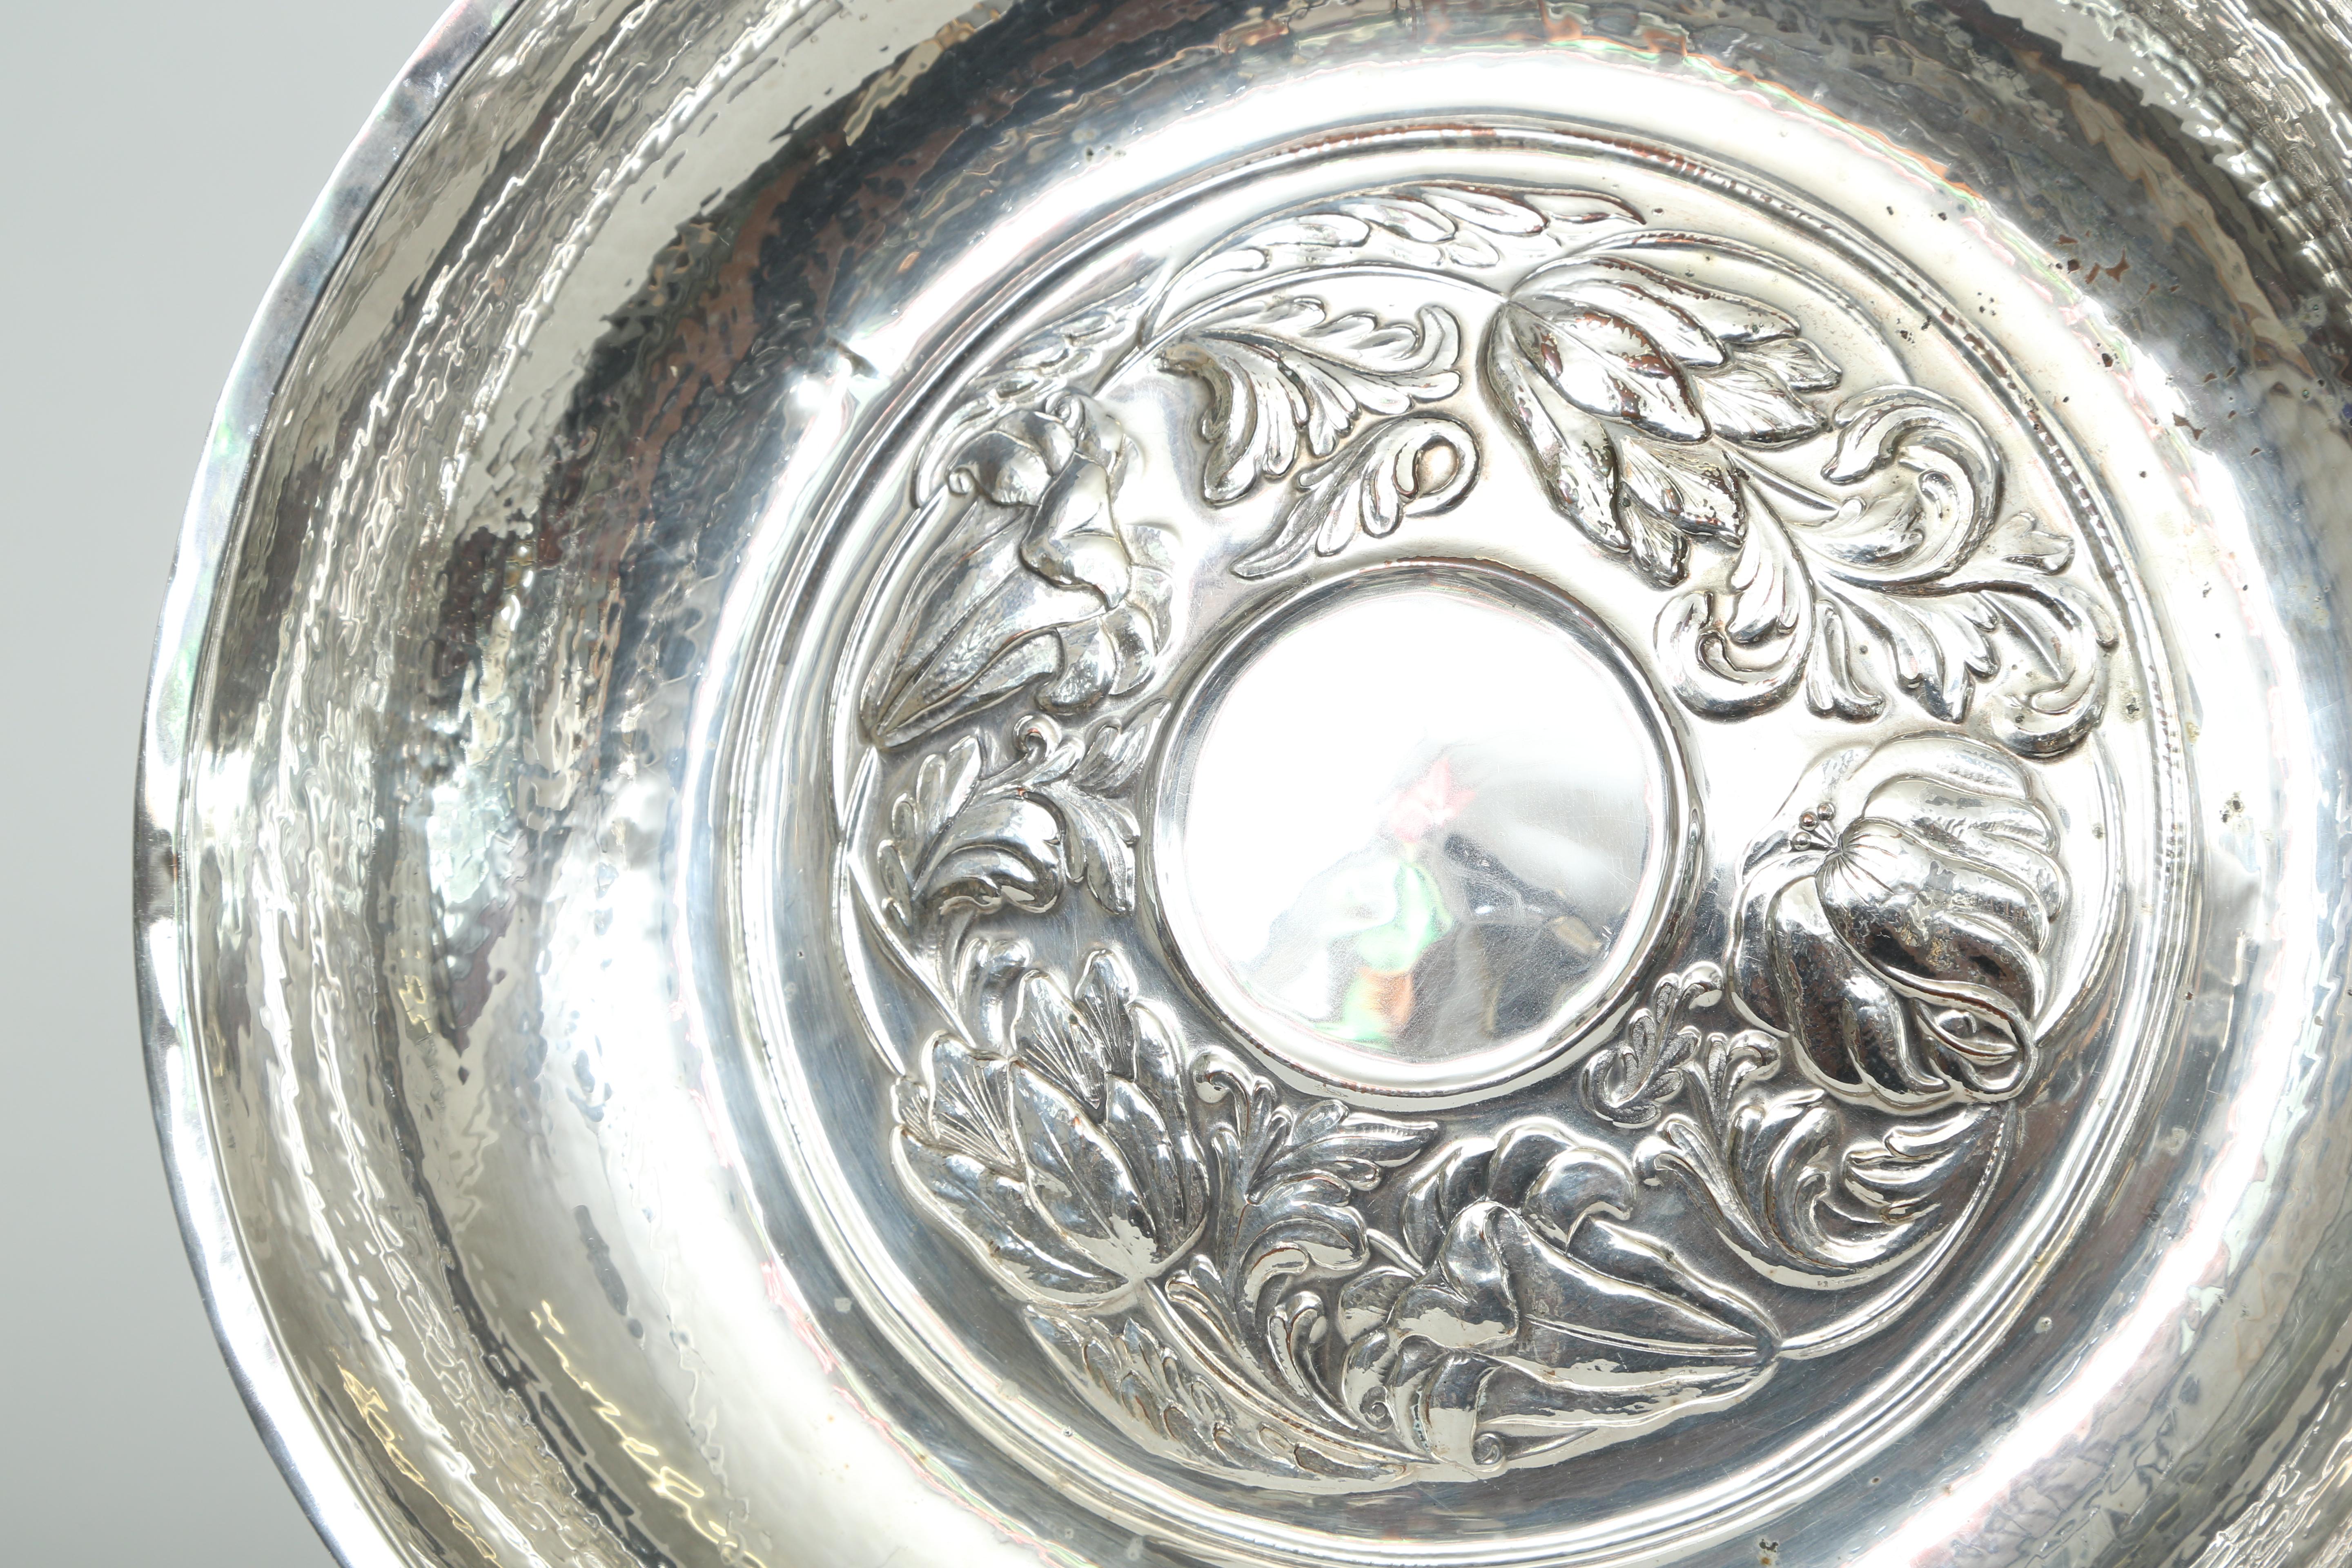 Paire de bols en argent sur cuivre fabriqués à la main dans le cadre du mouvement Arts & Crafts. Le motif repoussé est constitué de diverses fleurs et feuilles avec une bordure martelée à la main. La Duchess of Sutherland's Cripples Guild (D.S.C.G.